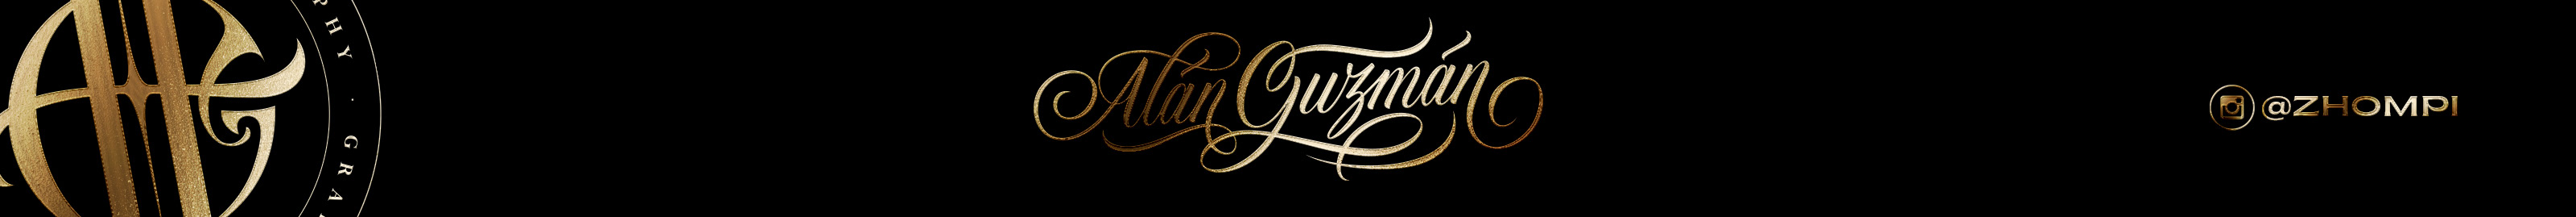 Alán Guzmán's profile banner